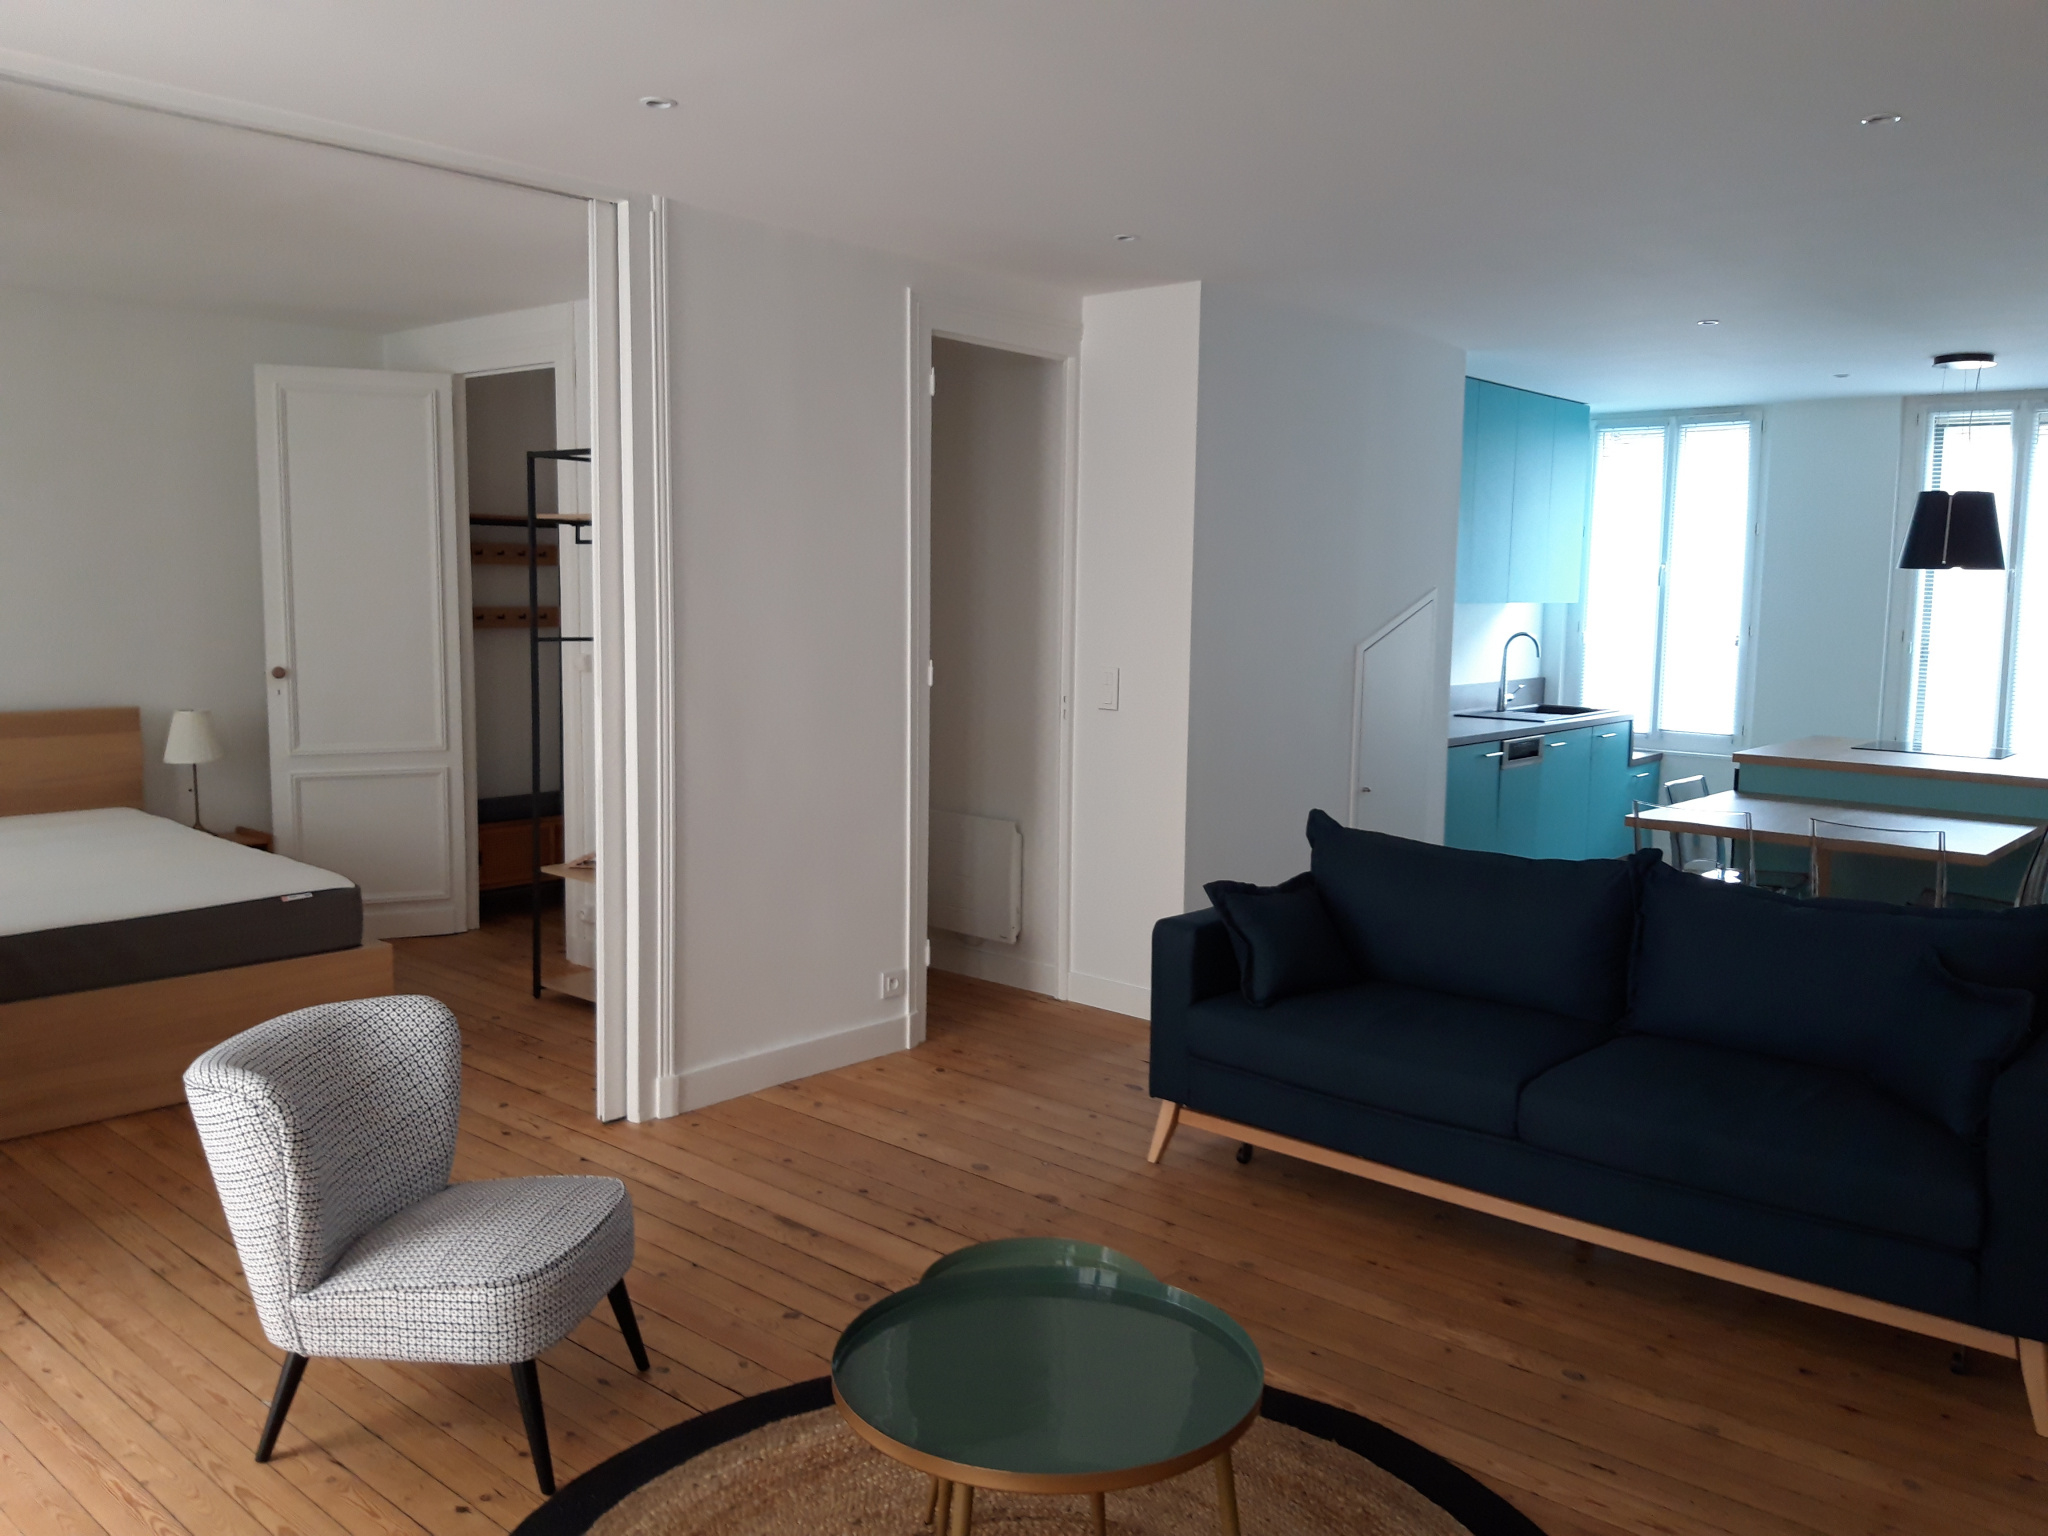 Location Bordeaux - Appartement T3 Meublé | Immobilier Dubois dedans Location Appartement Meublé Bordeaux